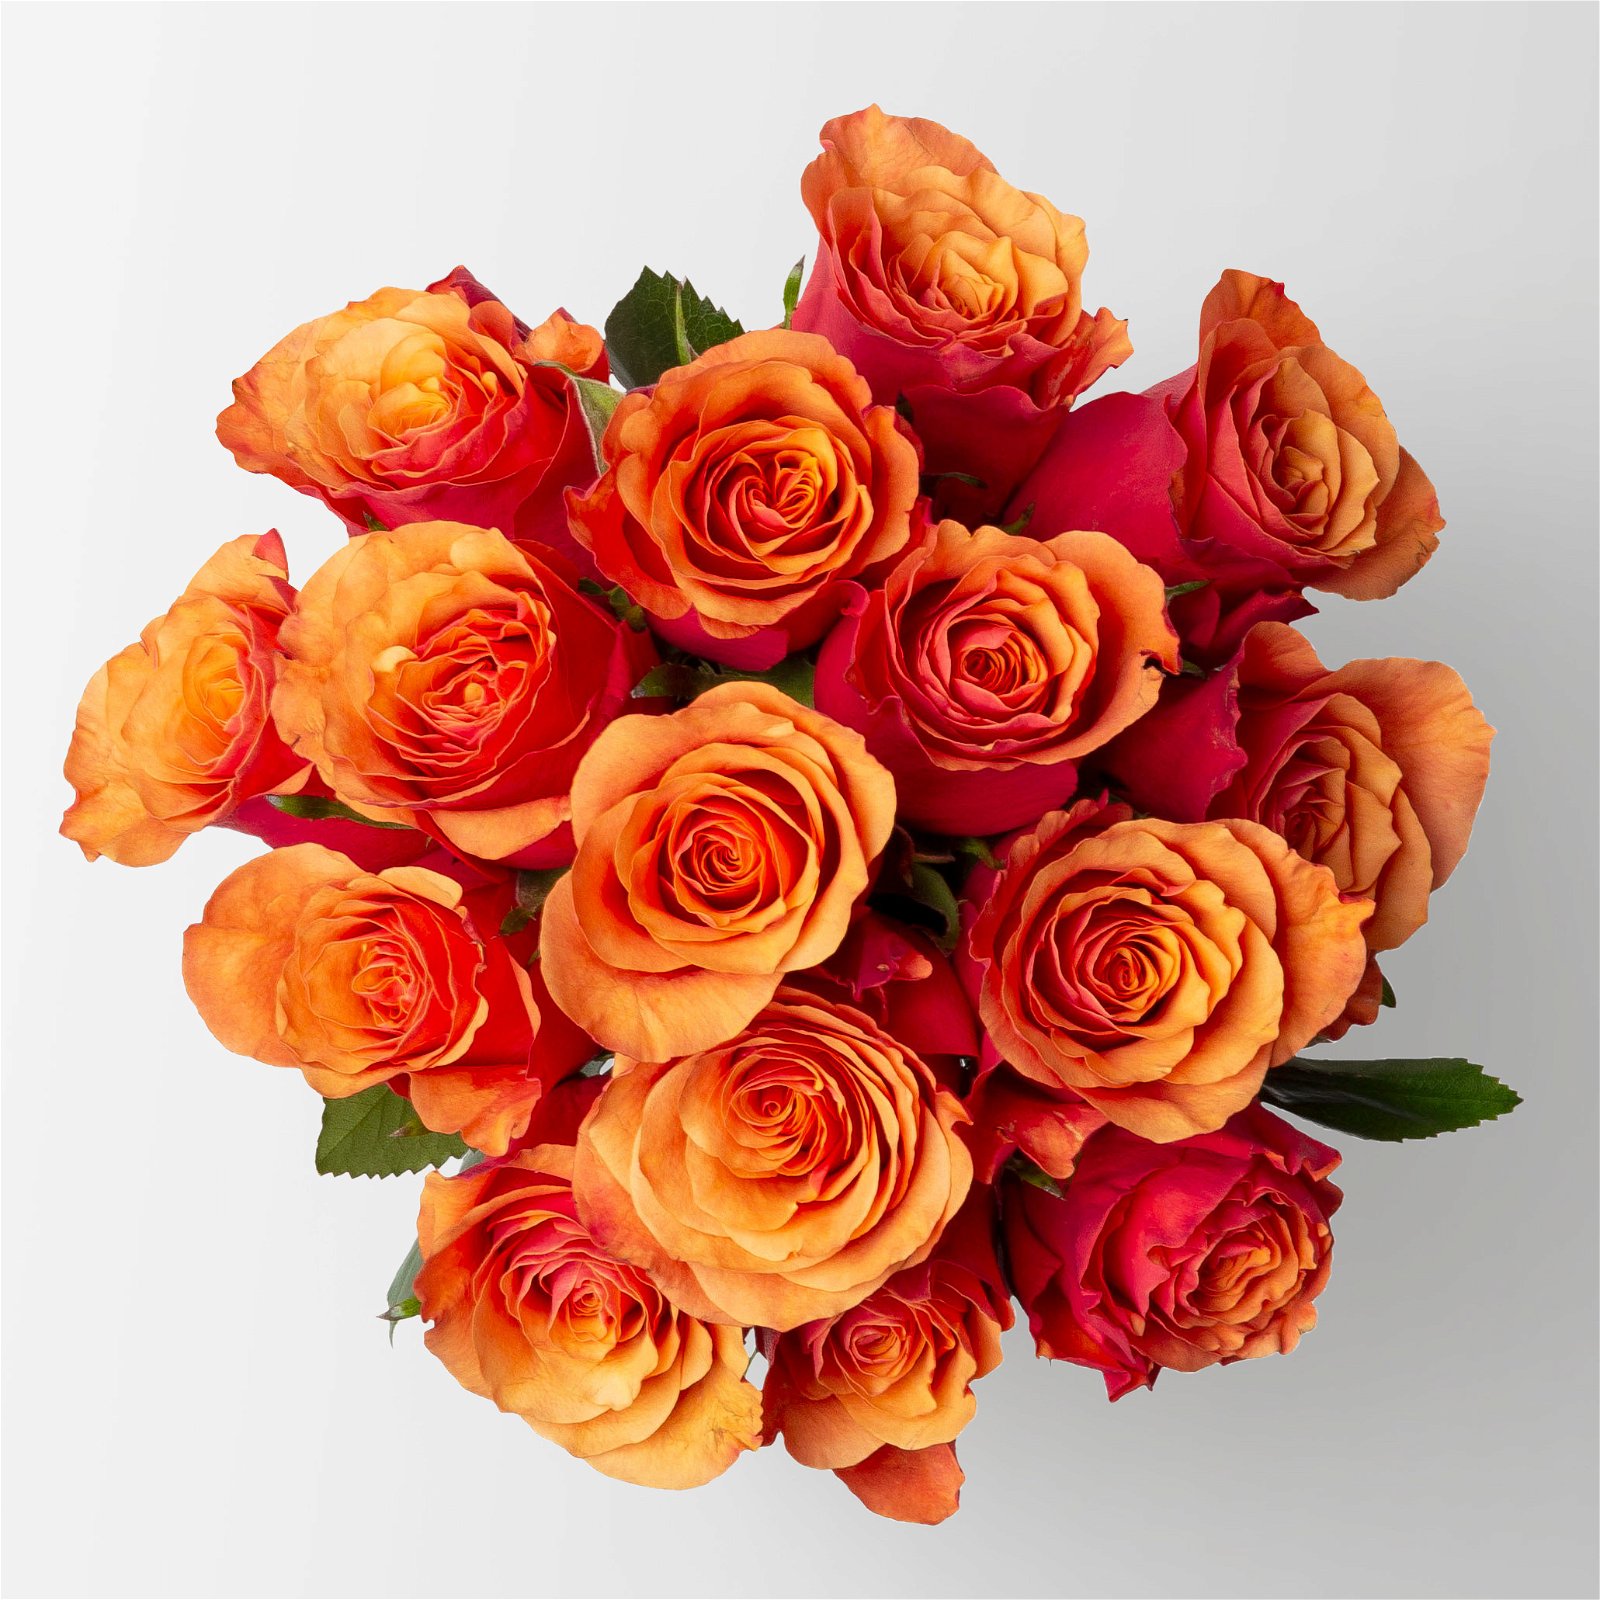 Blumenbund mit Rosen 'Espana, orange-rot, 15er-Bund, inkl. gratis Grußkarte